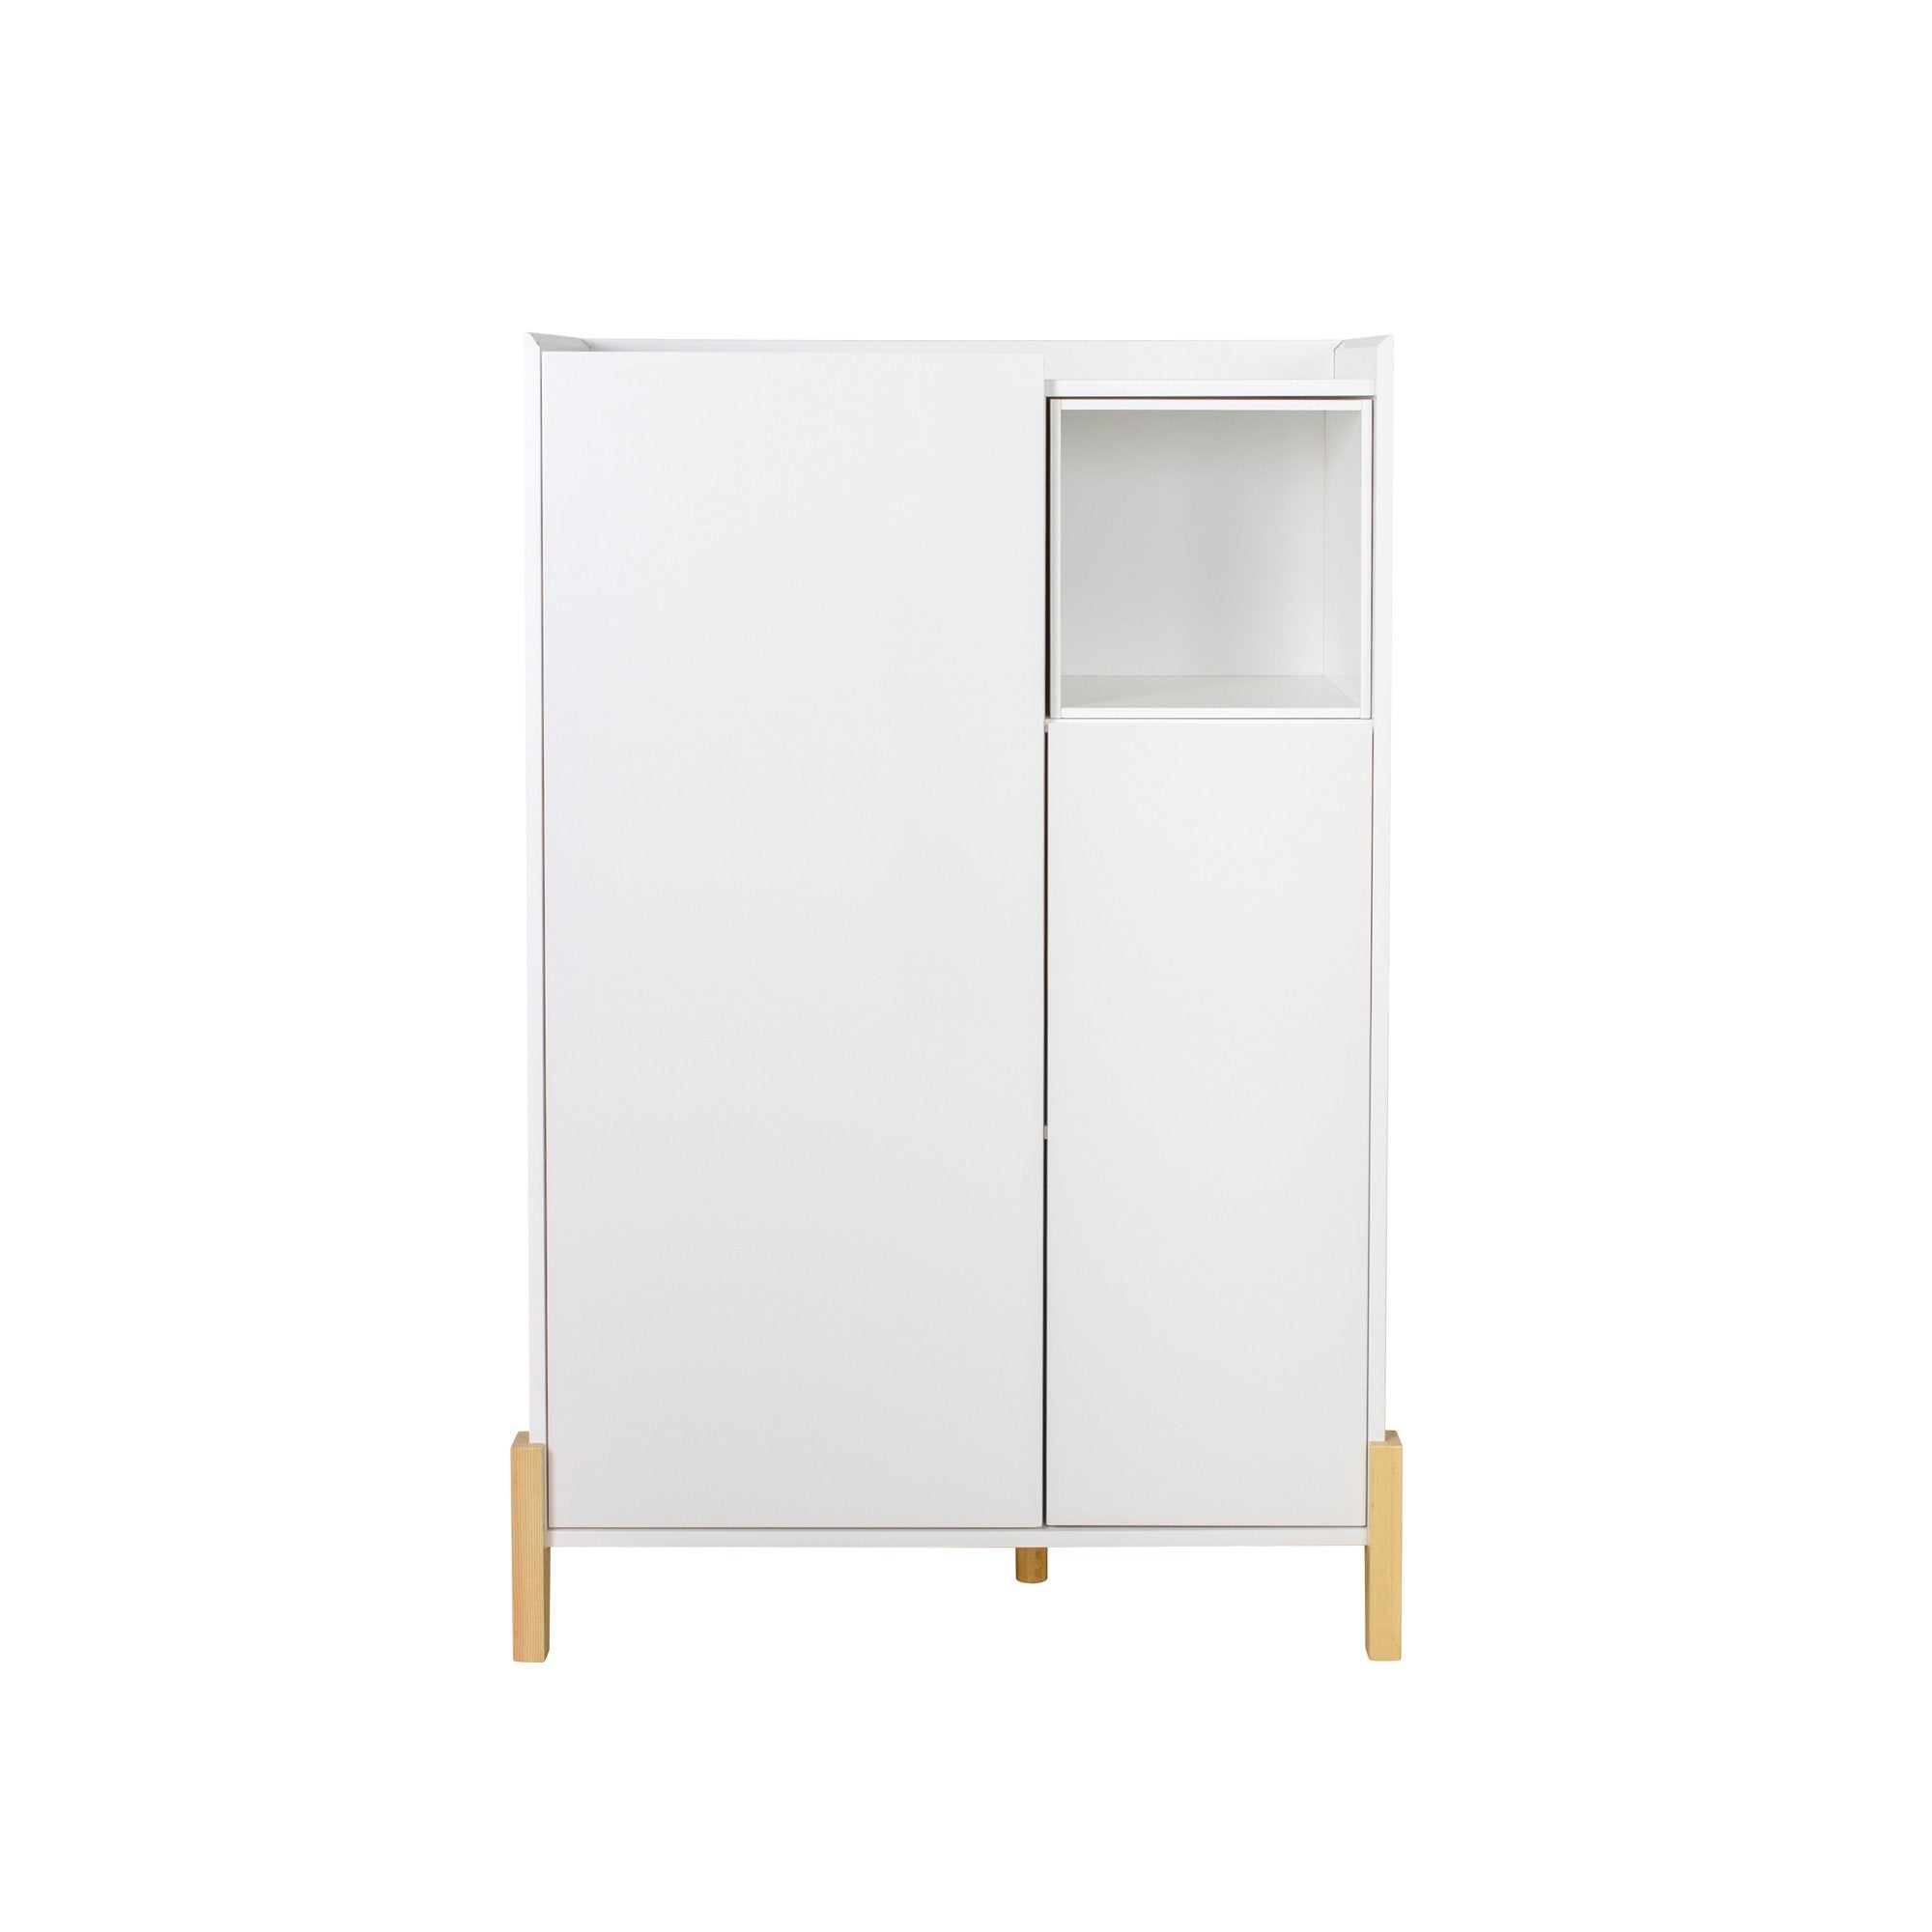 Floor Storage Cabinet with 2 Door and 1 Open Shelf, White